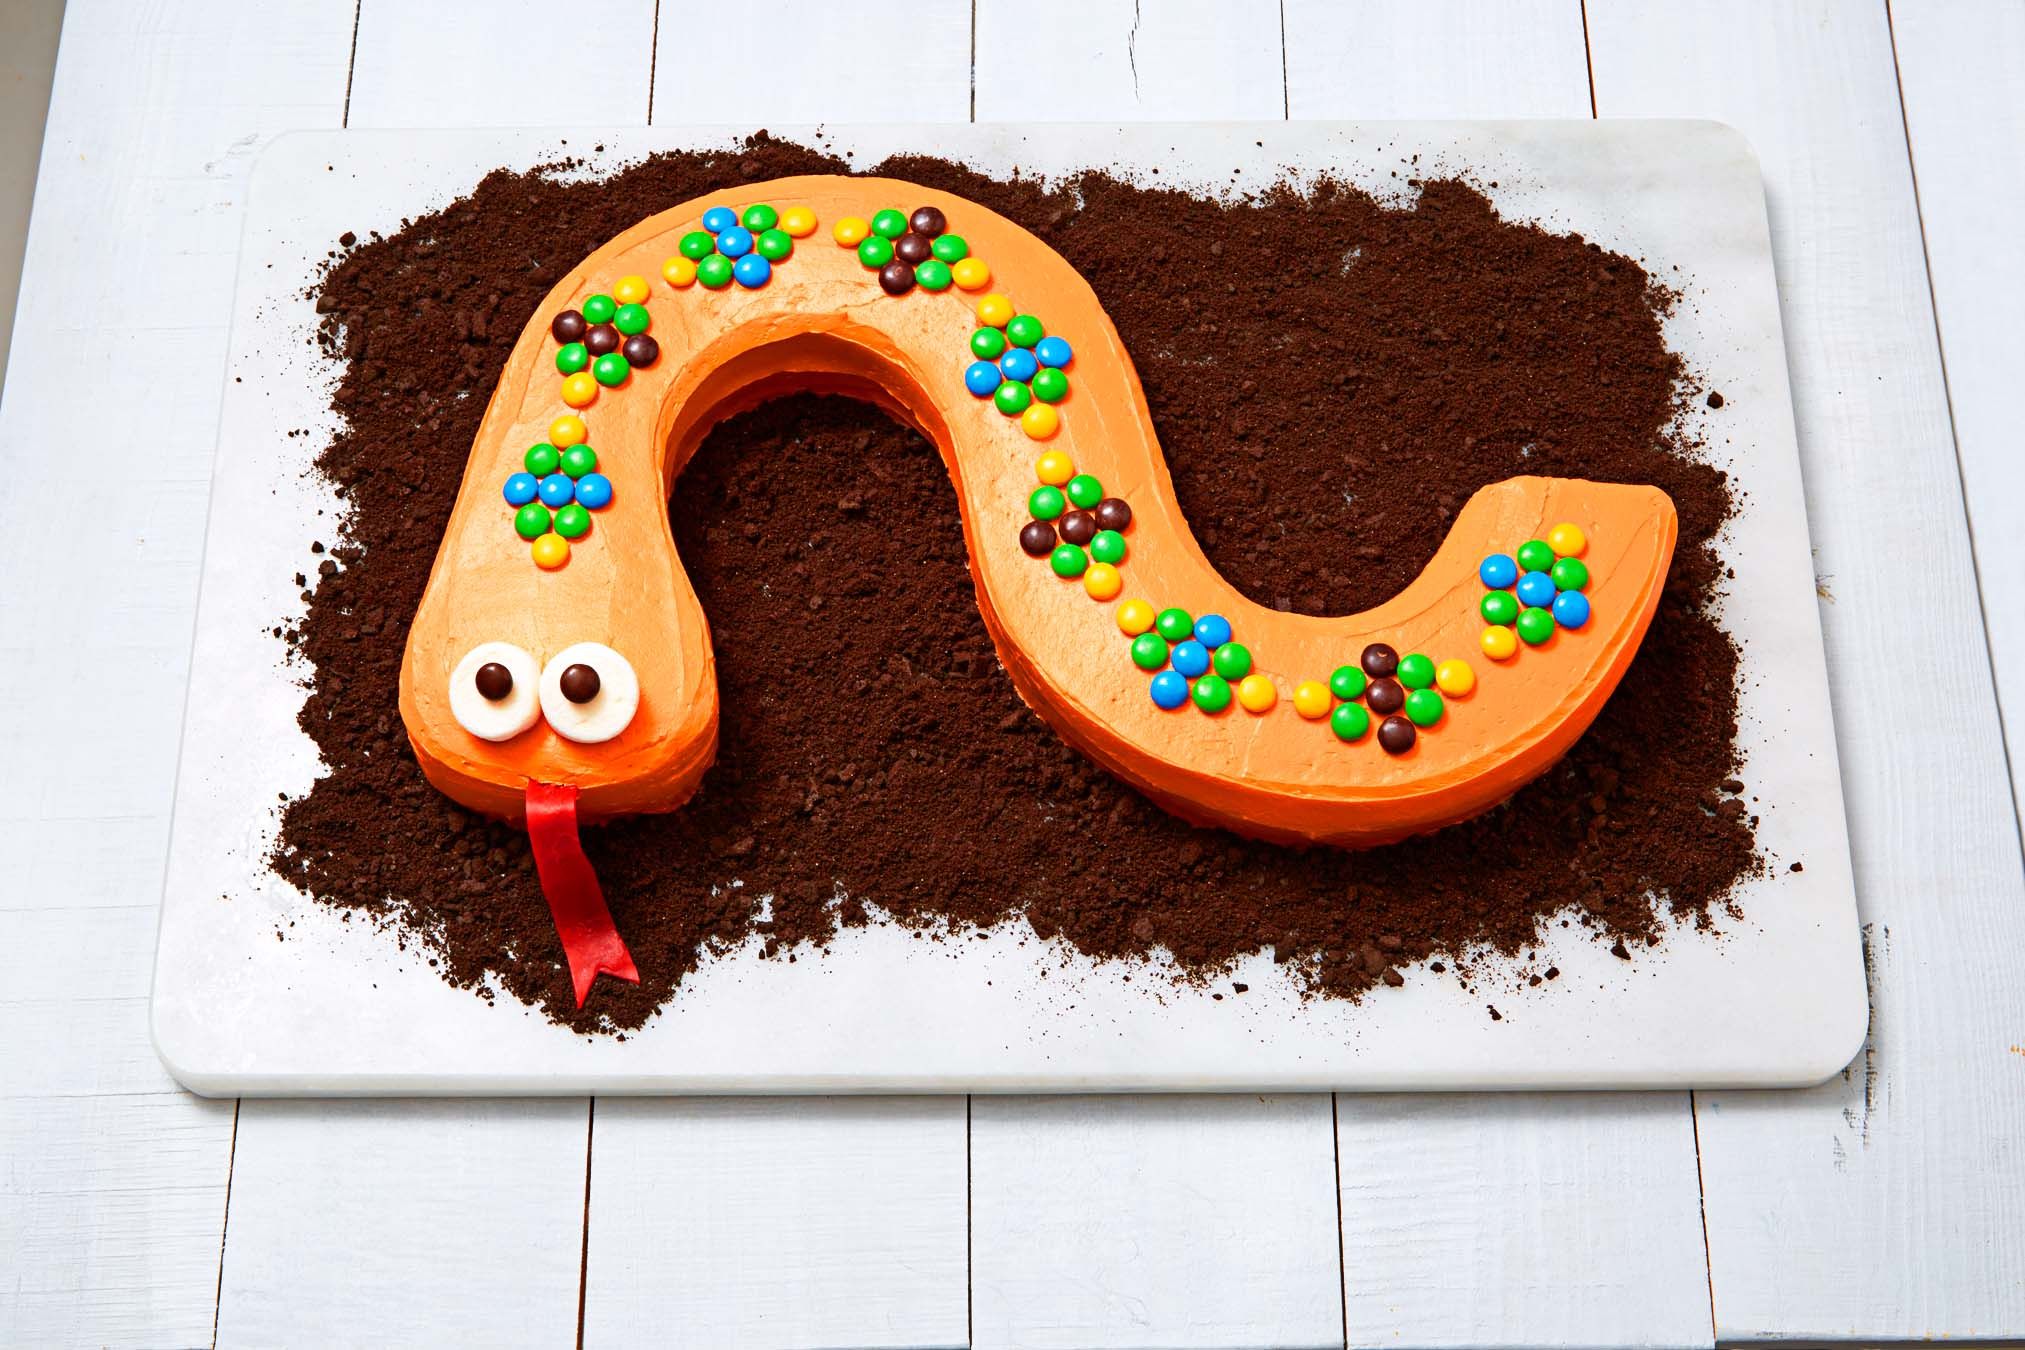 happy birthday snake cake